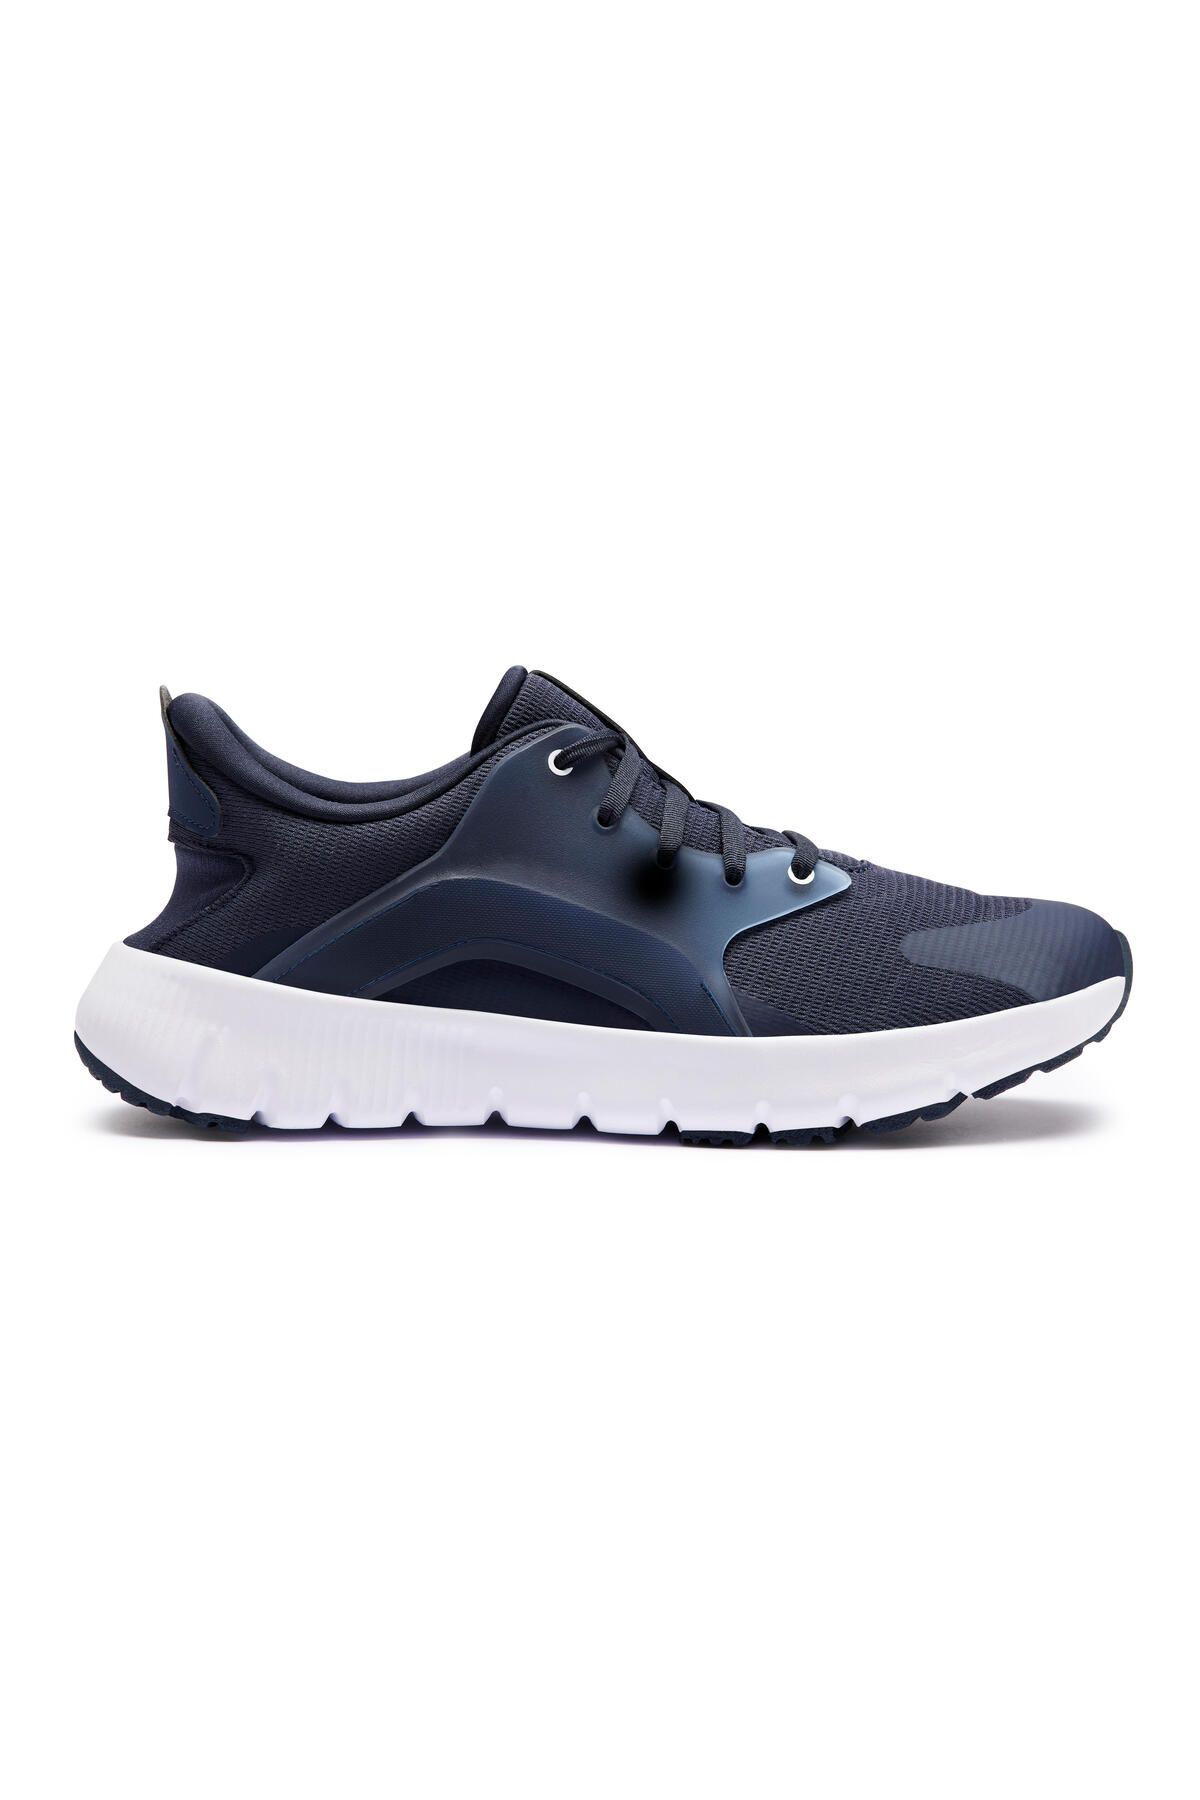 Decathlon Erkek Yürüyüş Ayakkabısı - Mavi - SW500.1